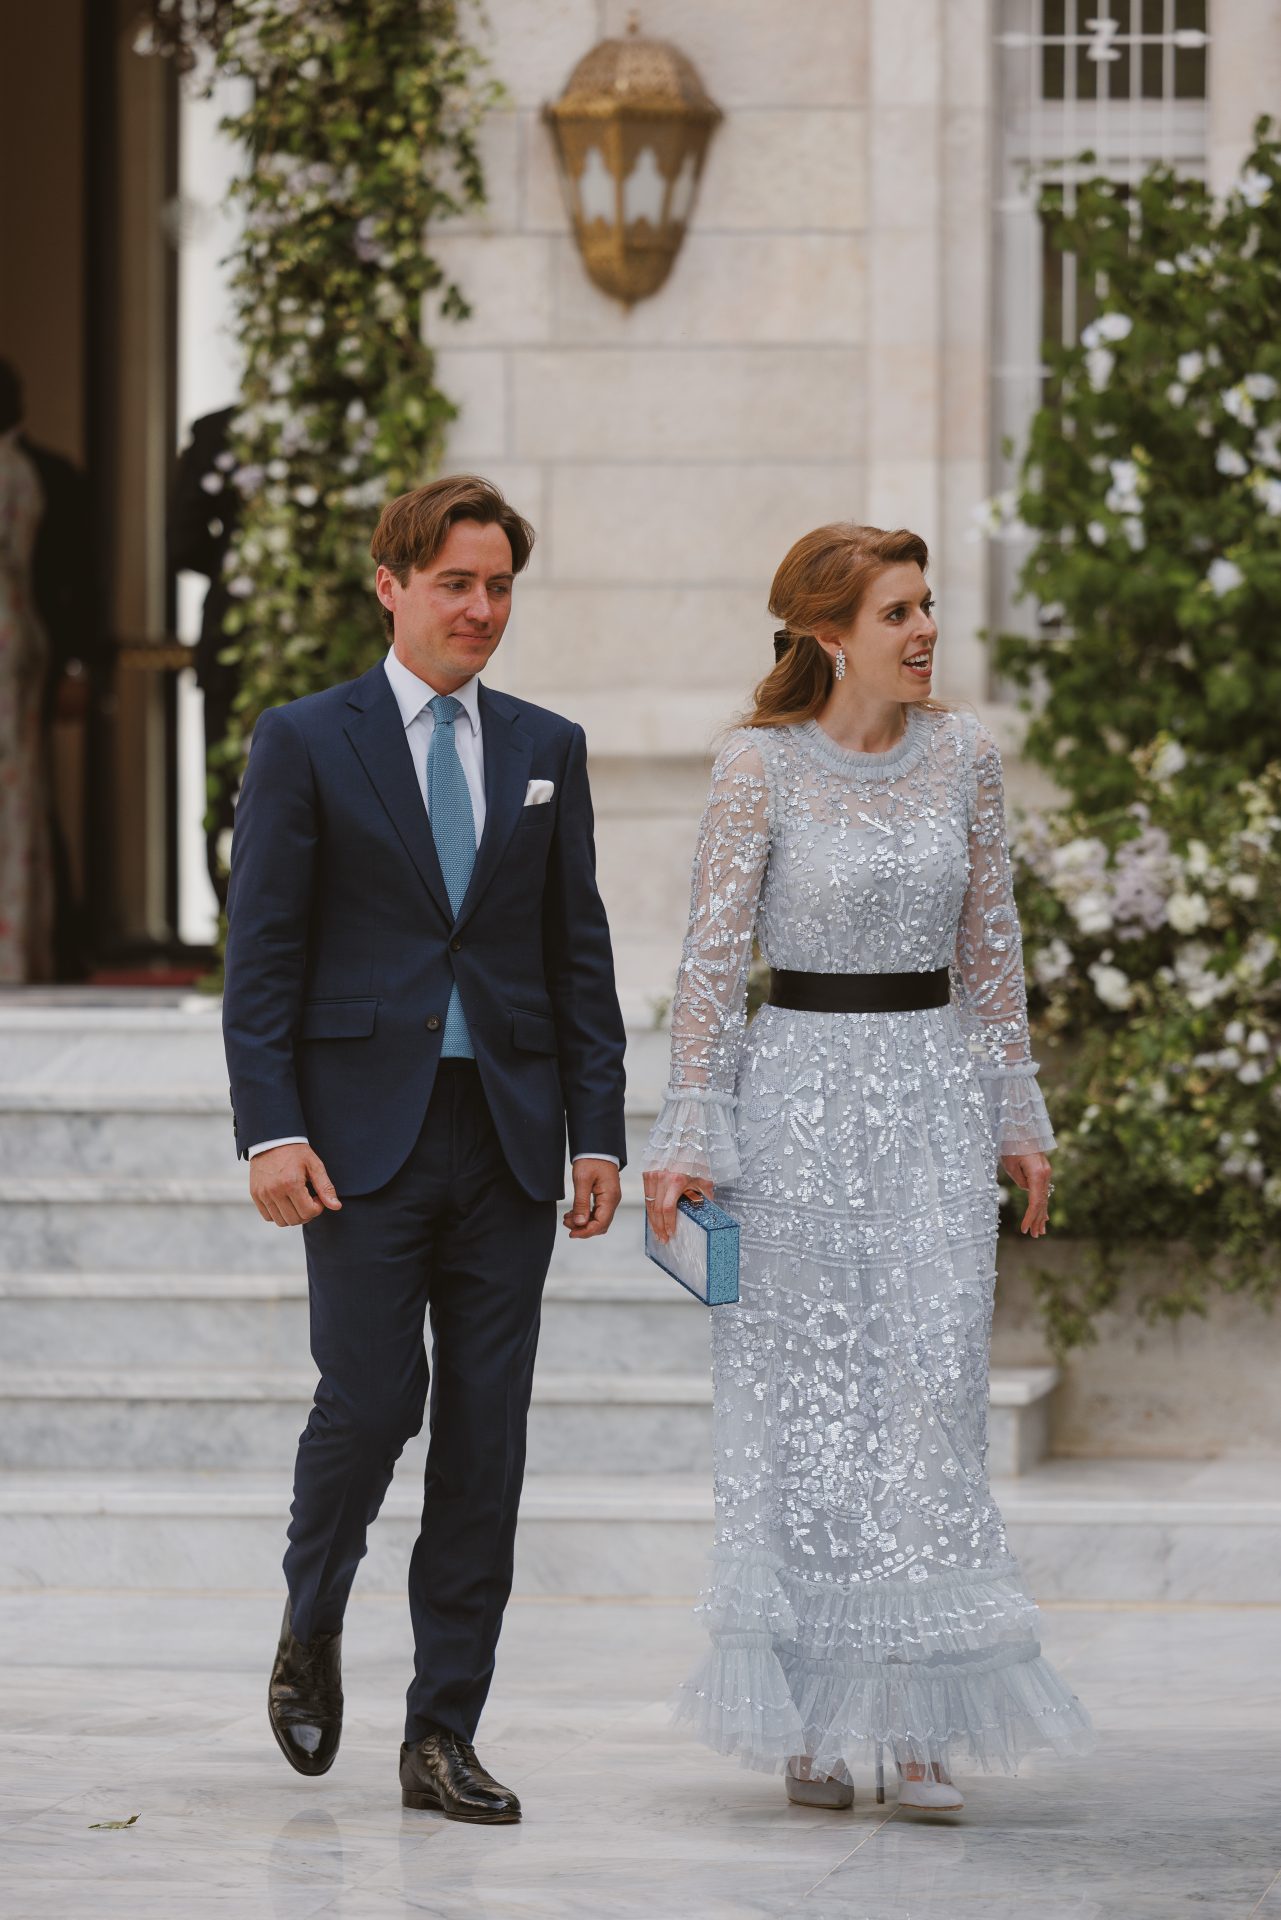 Jordan Royal Wedding: Best Dressed Guests